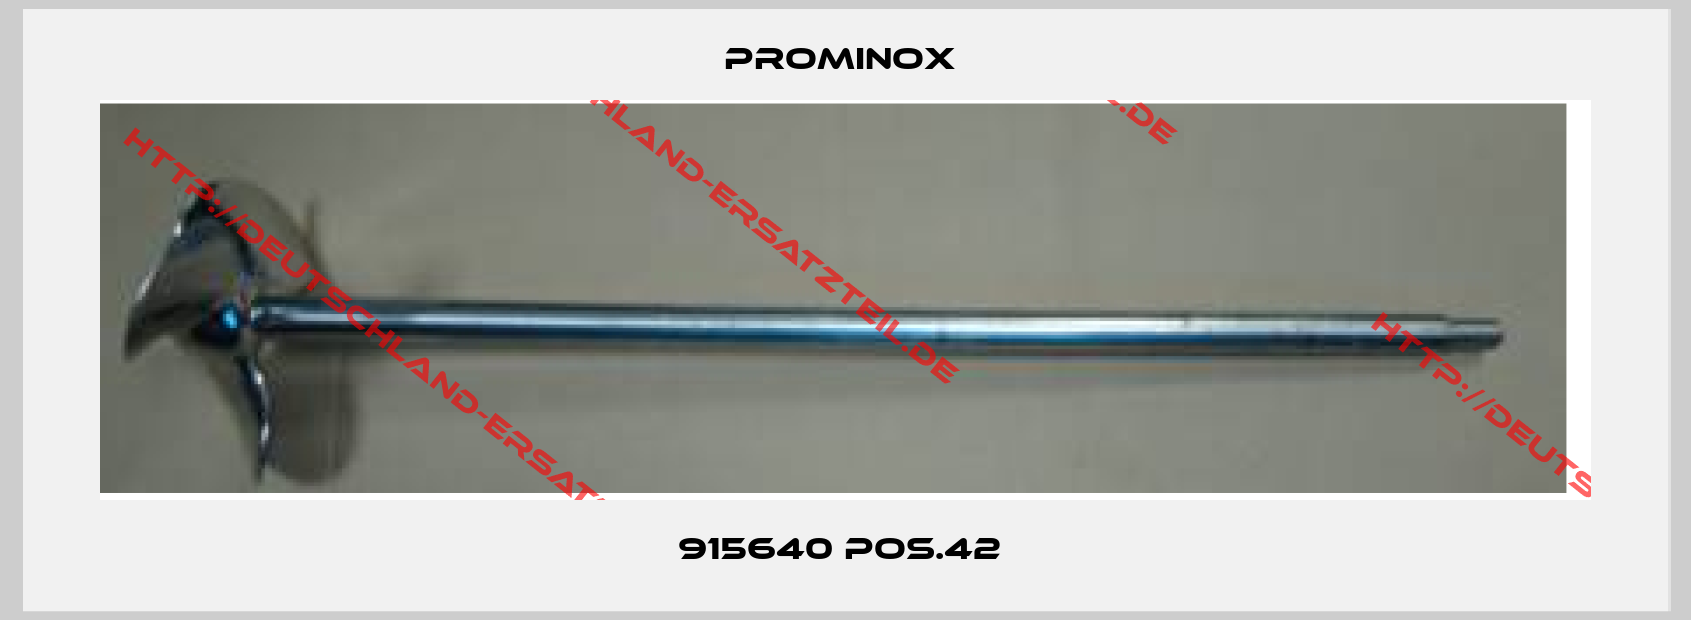 Prominox -915640 pos.42 